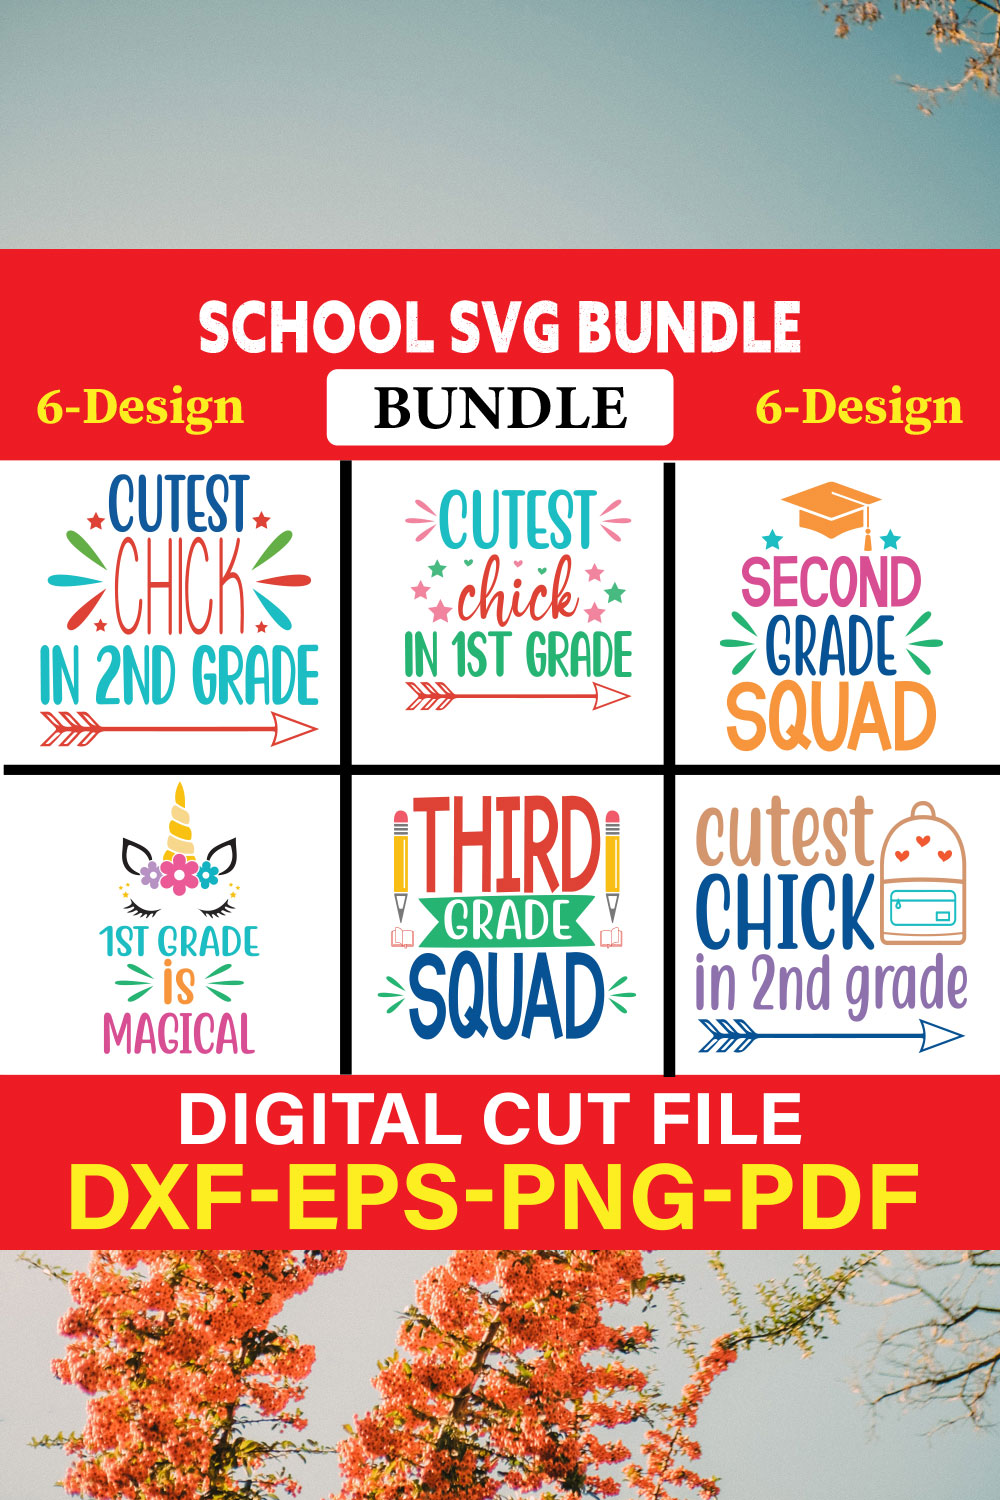 School svg bundle T-shirt Design Bundle Vol-3 pinterest preview image.